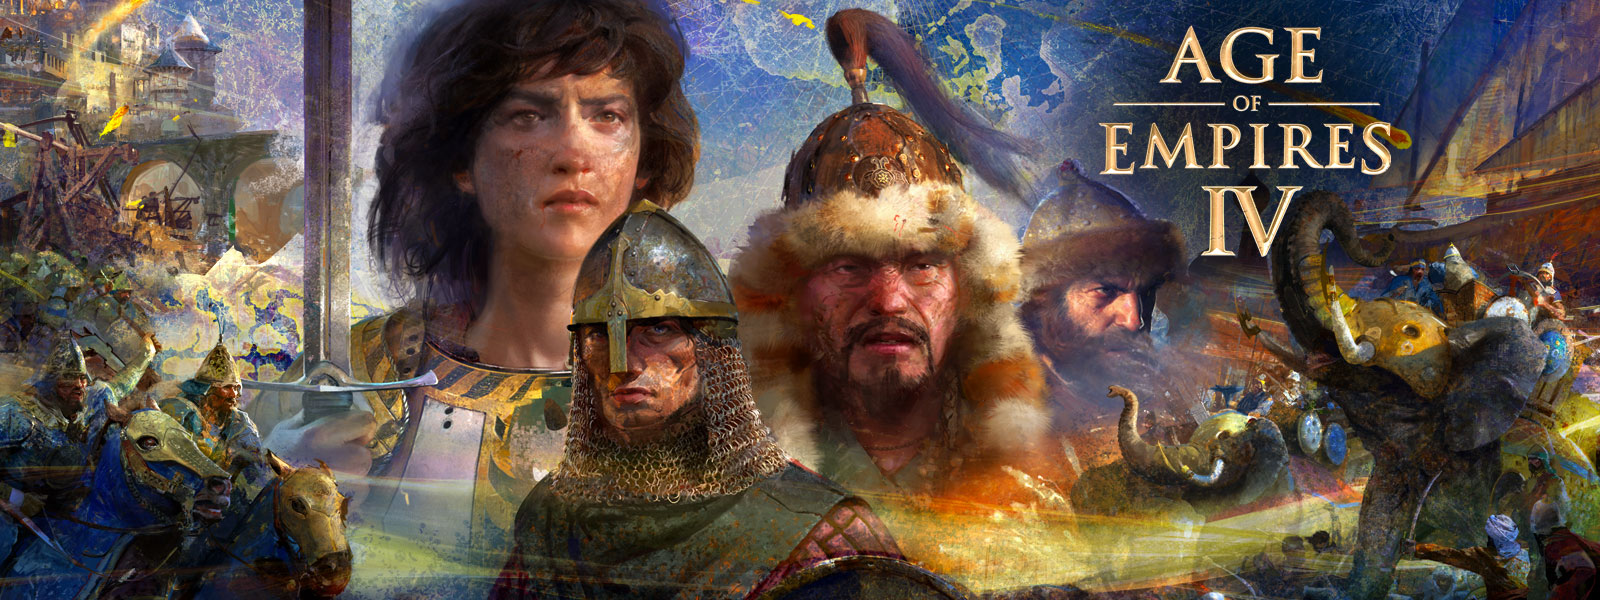 Age of Empires IV. Fire karakterer med scener av krig, elefanter og menn på hester rundt dem på en kartbakgrunn